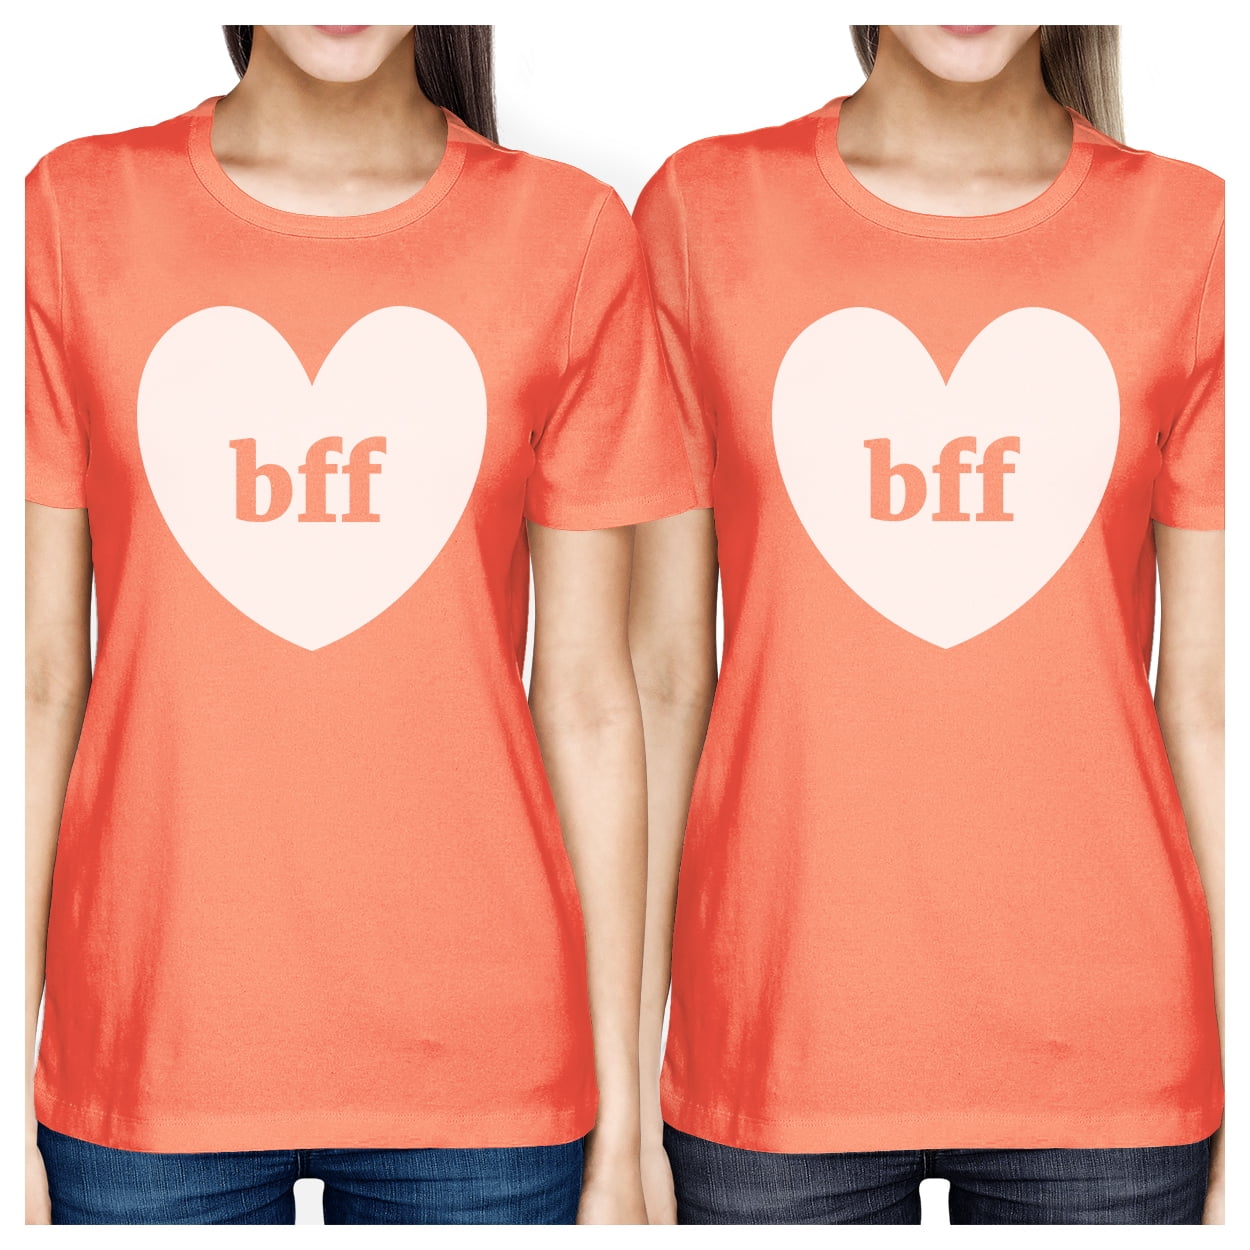 bff-hearts-bff-matching-peach-shirts-walmart